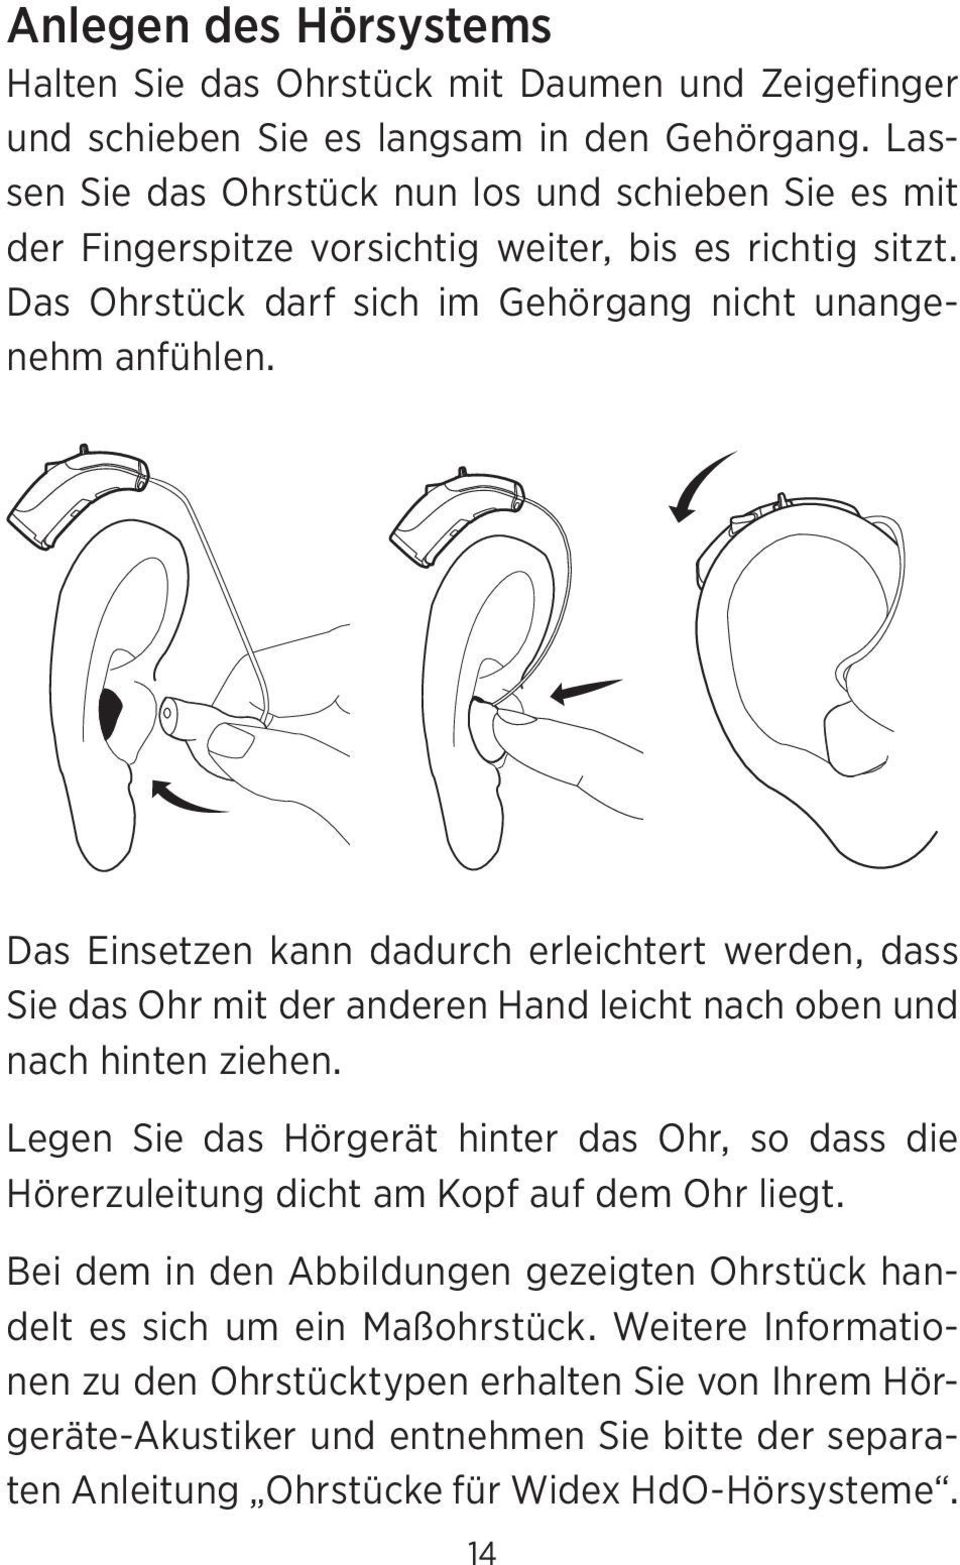 Das Einsetzen kann dadurch erleichtert werden, dass Sie das Ohr mit der anderen Hand leicht nach oben und nach hinten ziehen.